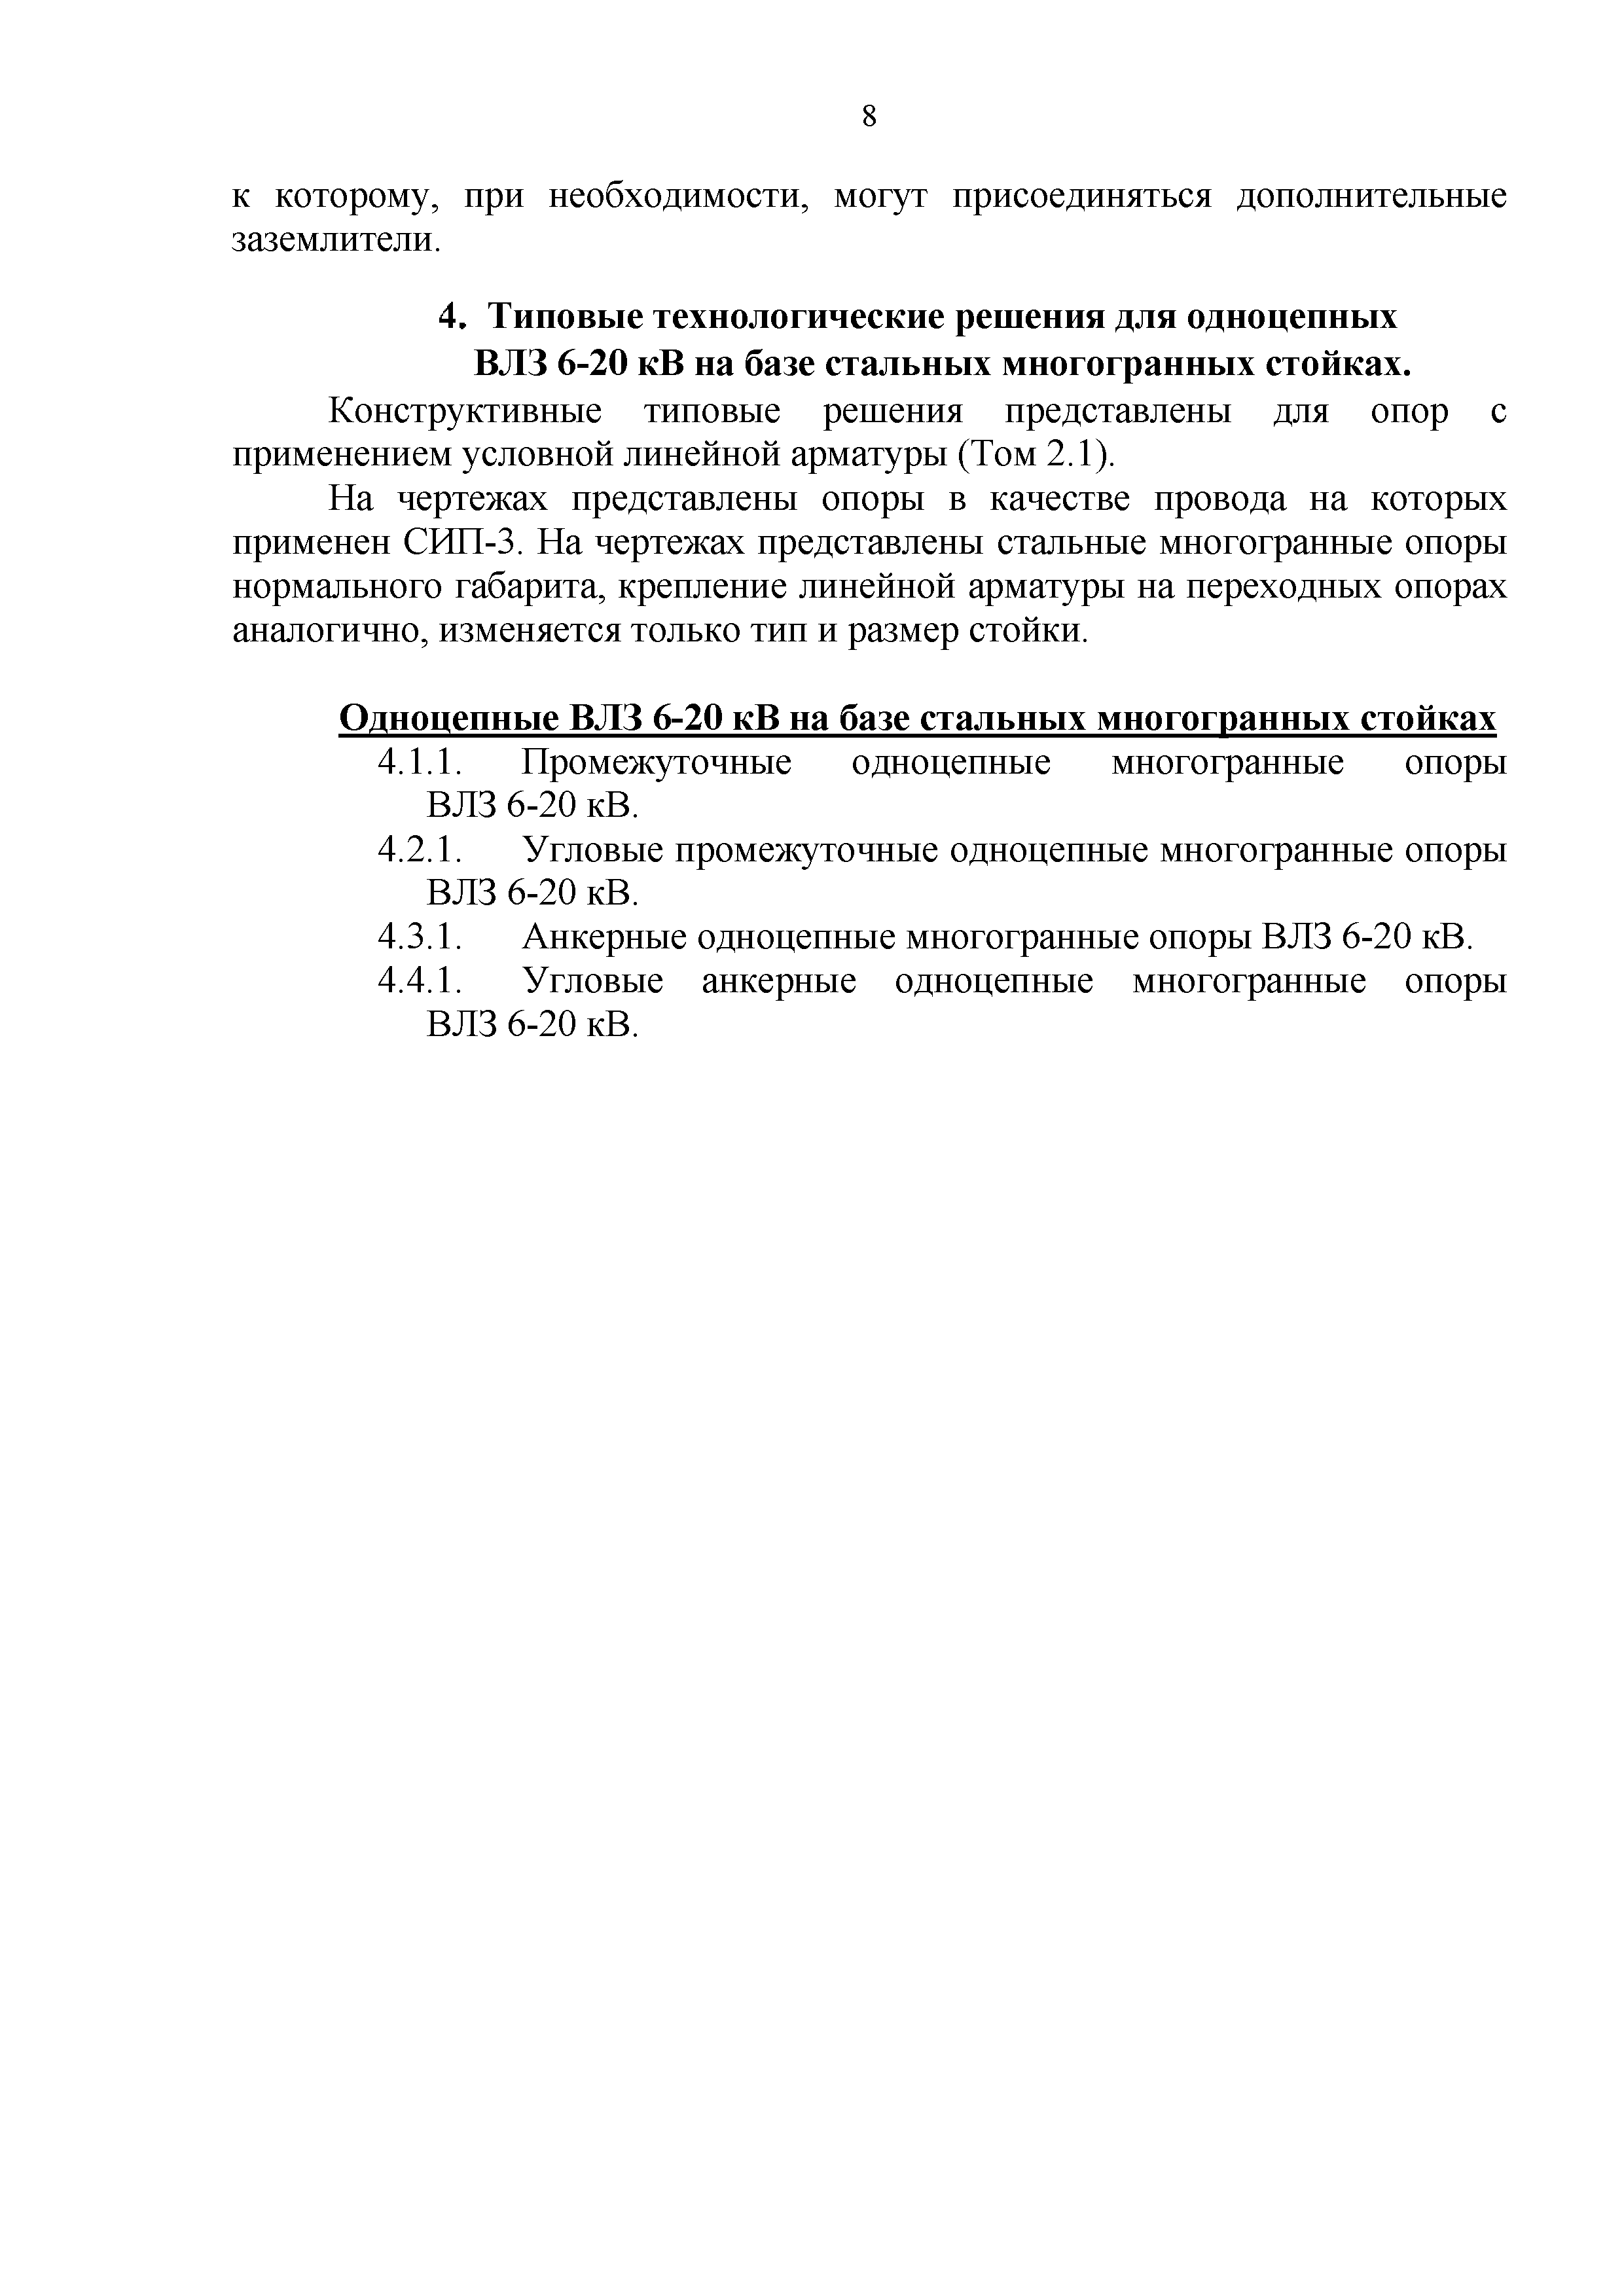 СТО 34.01-2.2-030-2017